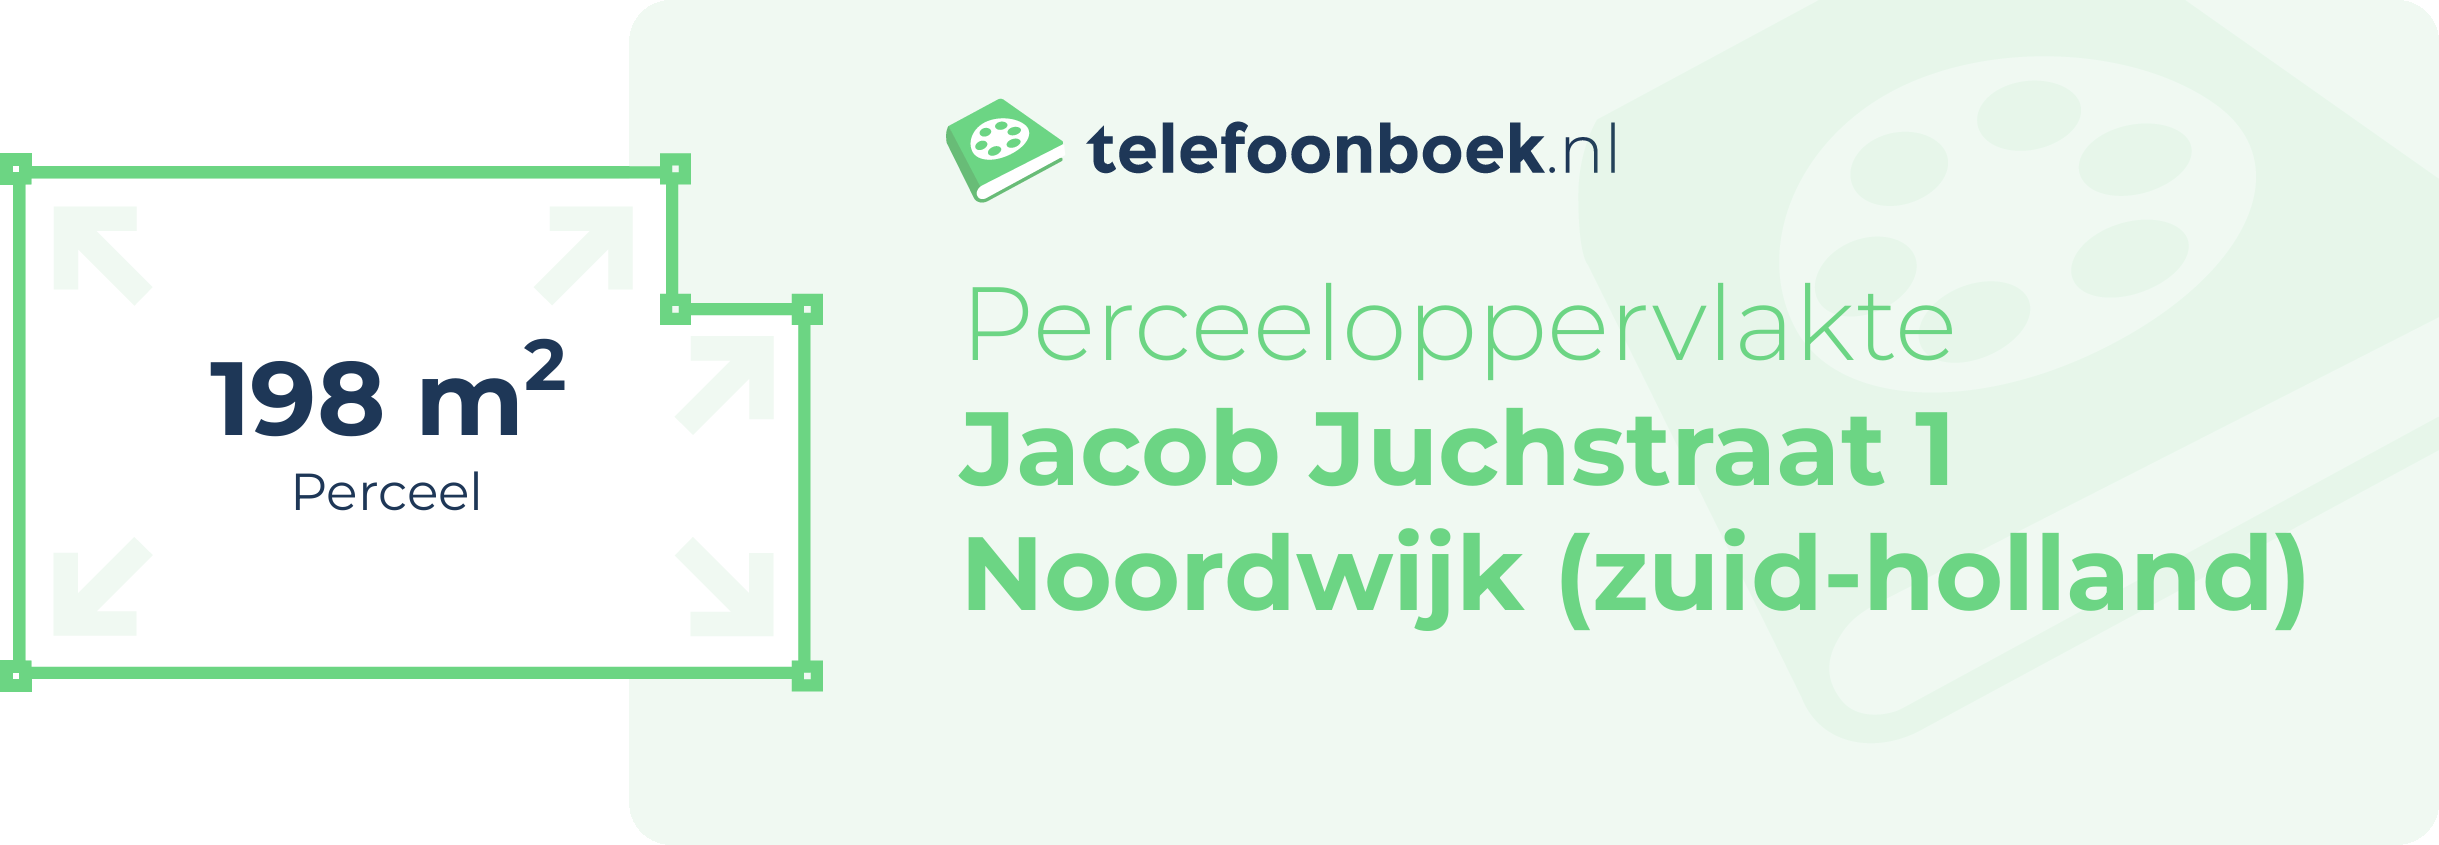 Perceeloppervlakte Jacob Juchstraat 1 Noordwijk (Zuid-Holland)